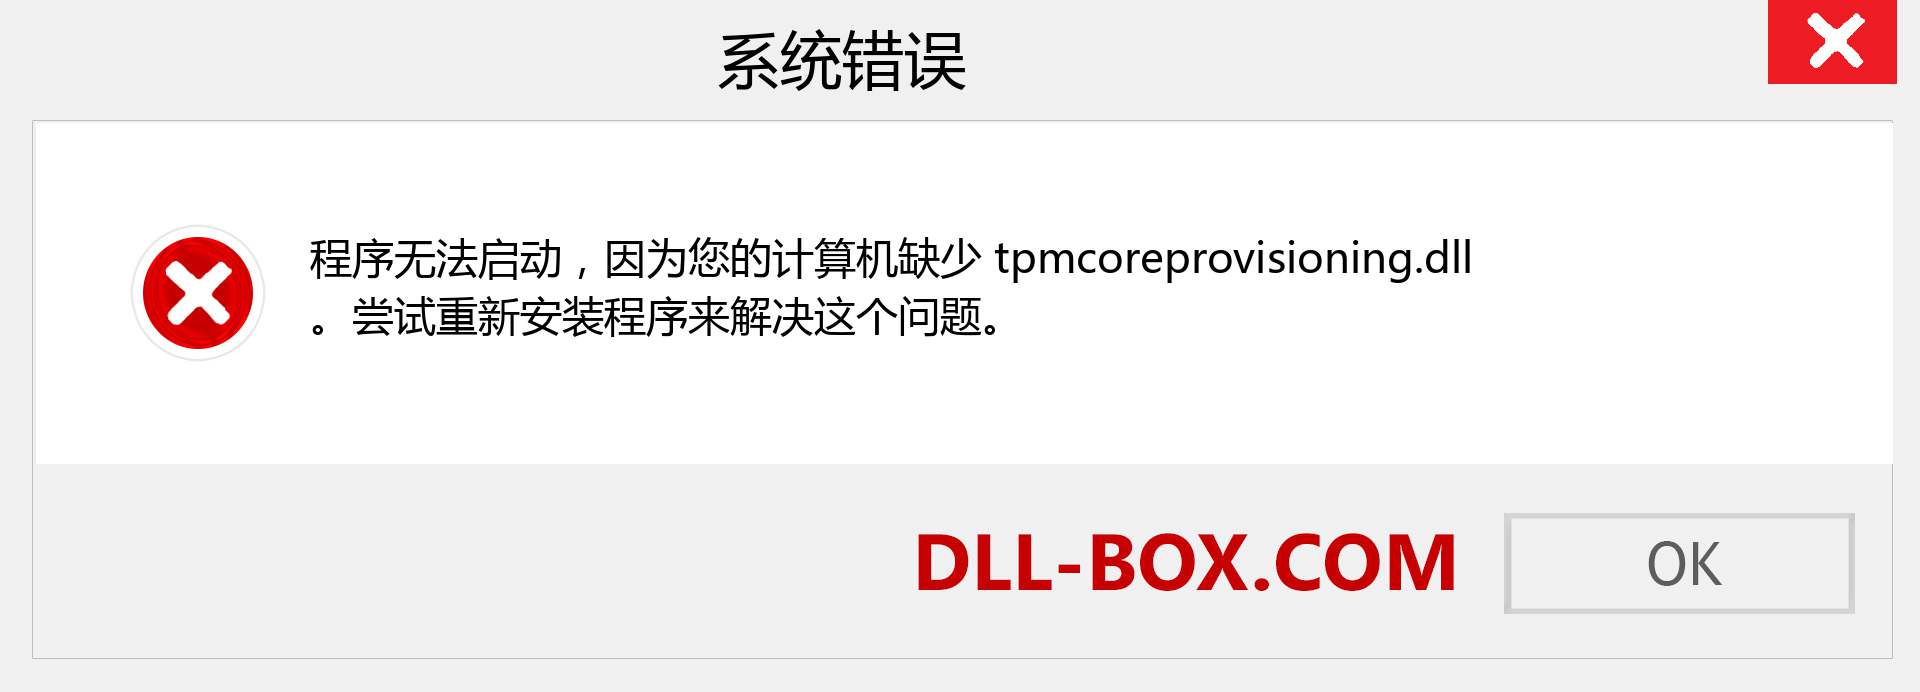 tpmcoreprovisioning.dll 文件丢失？。 适用于 Windows 7、8、10 的下载 - 修复 Windows、照片、图像上的 tpmcoreprovisioning dll 丢失错误